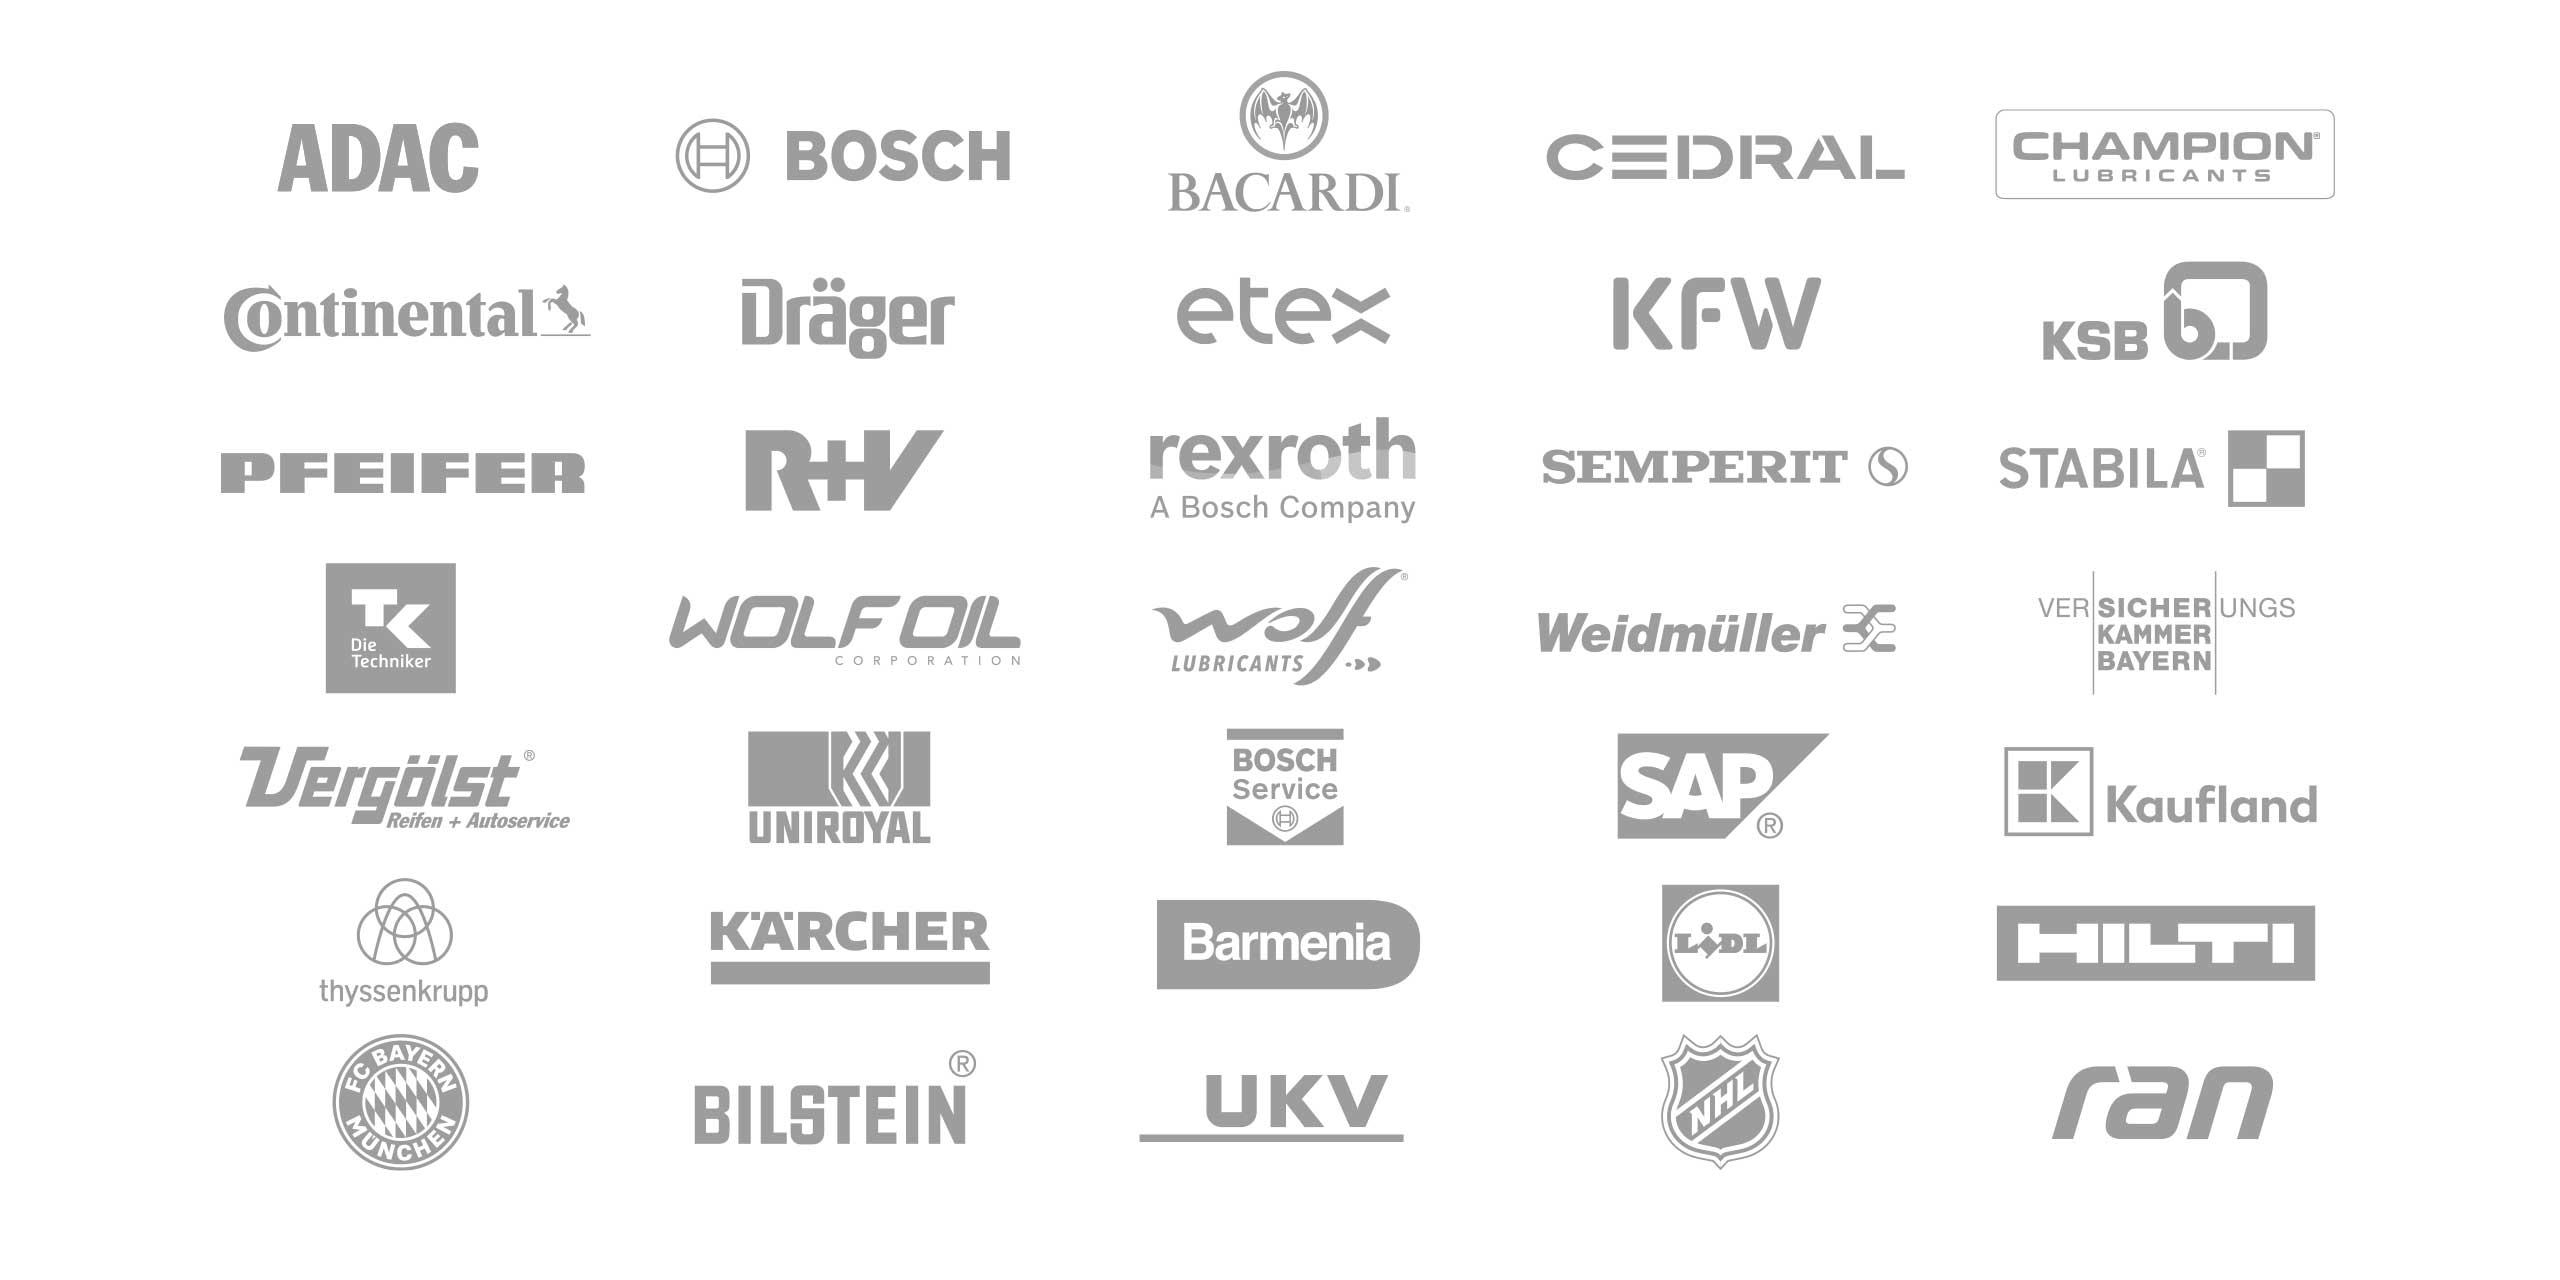 GBC Kundenportfolio mit den verschiedenen Logos in grau